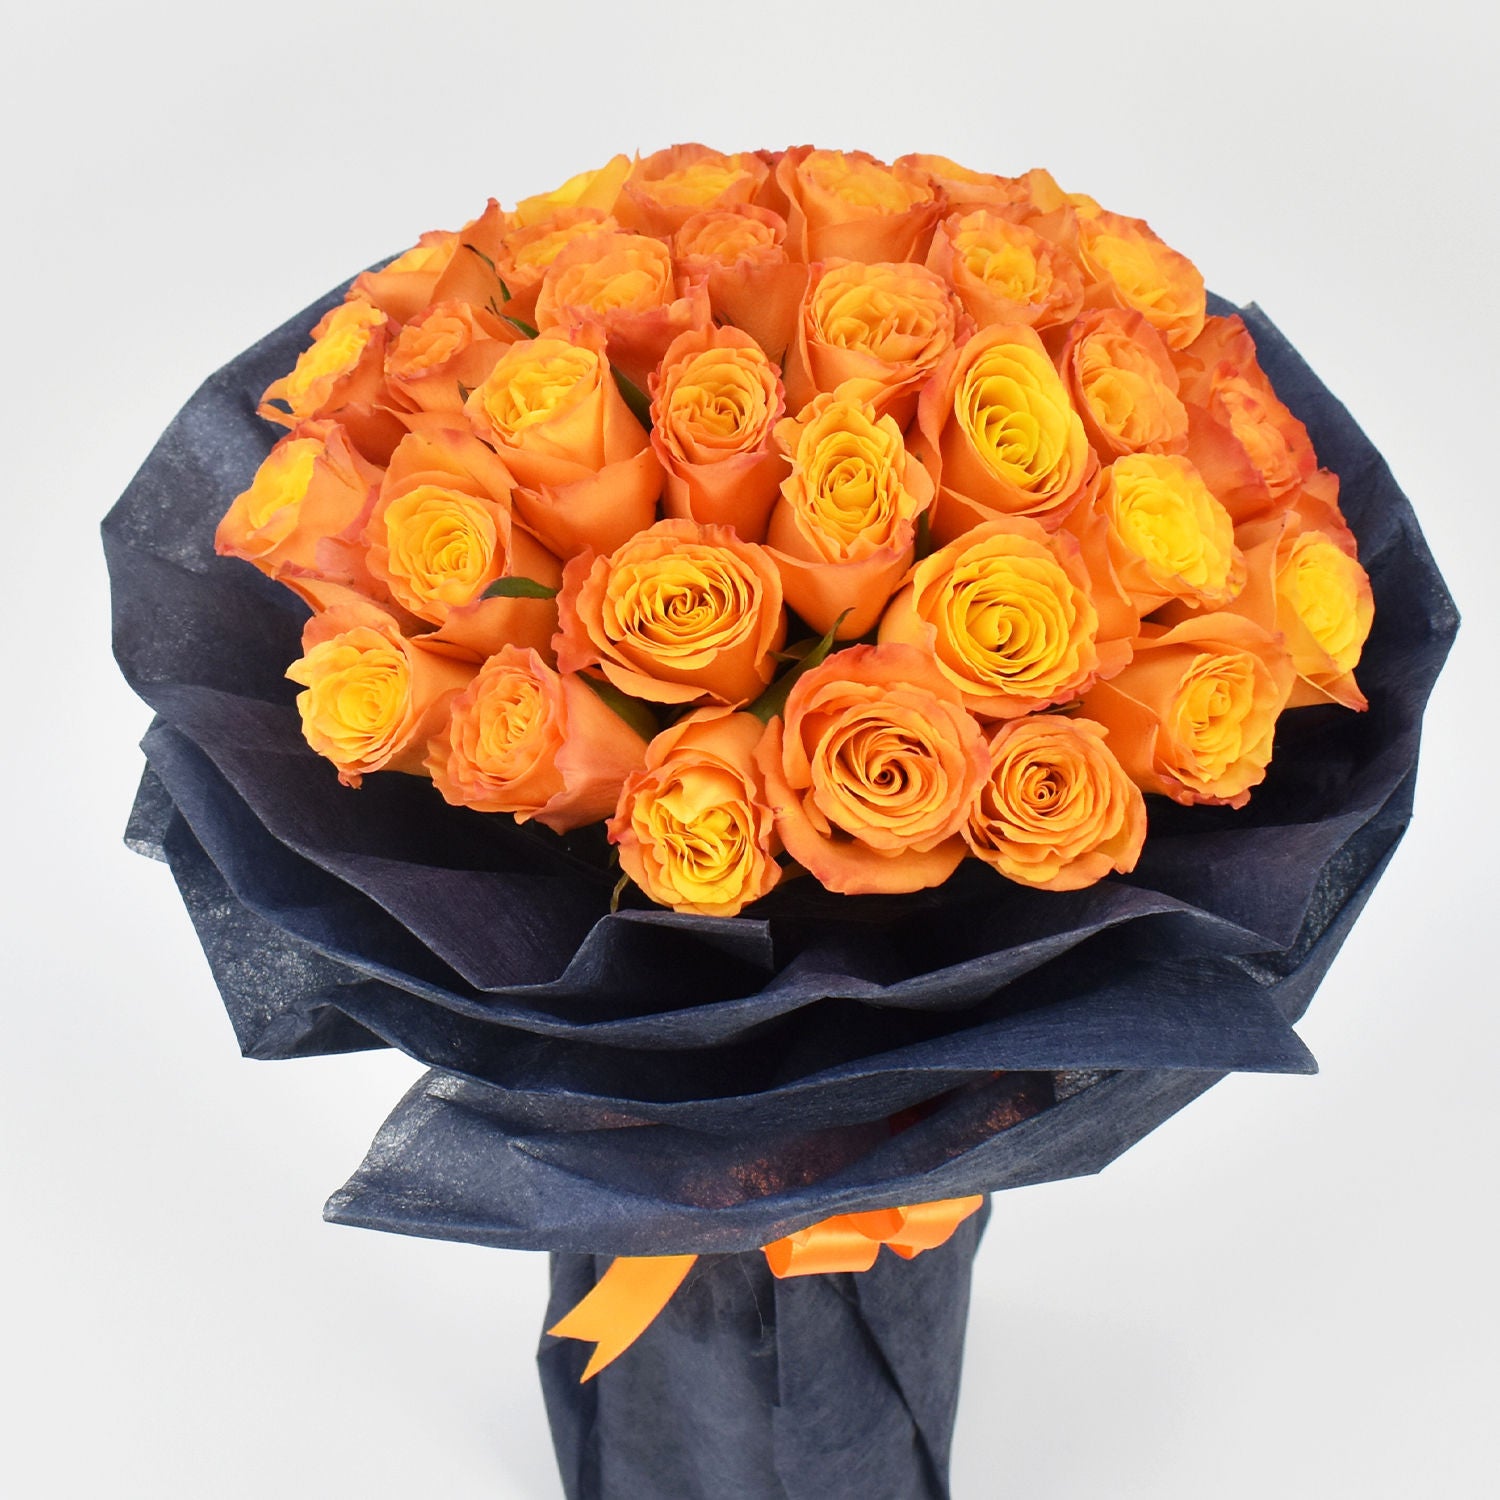 35 Orange Roses Bouquet